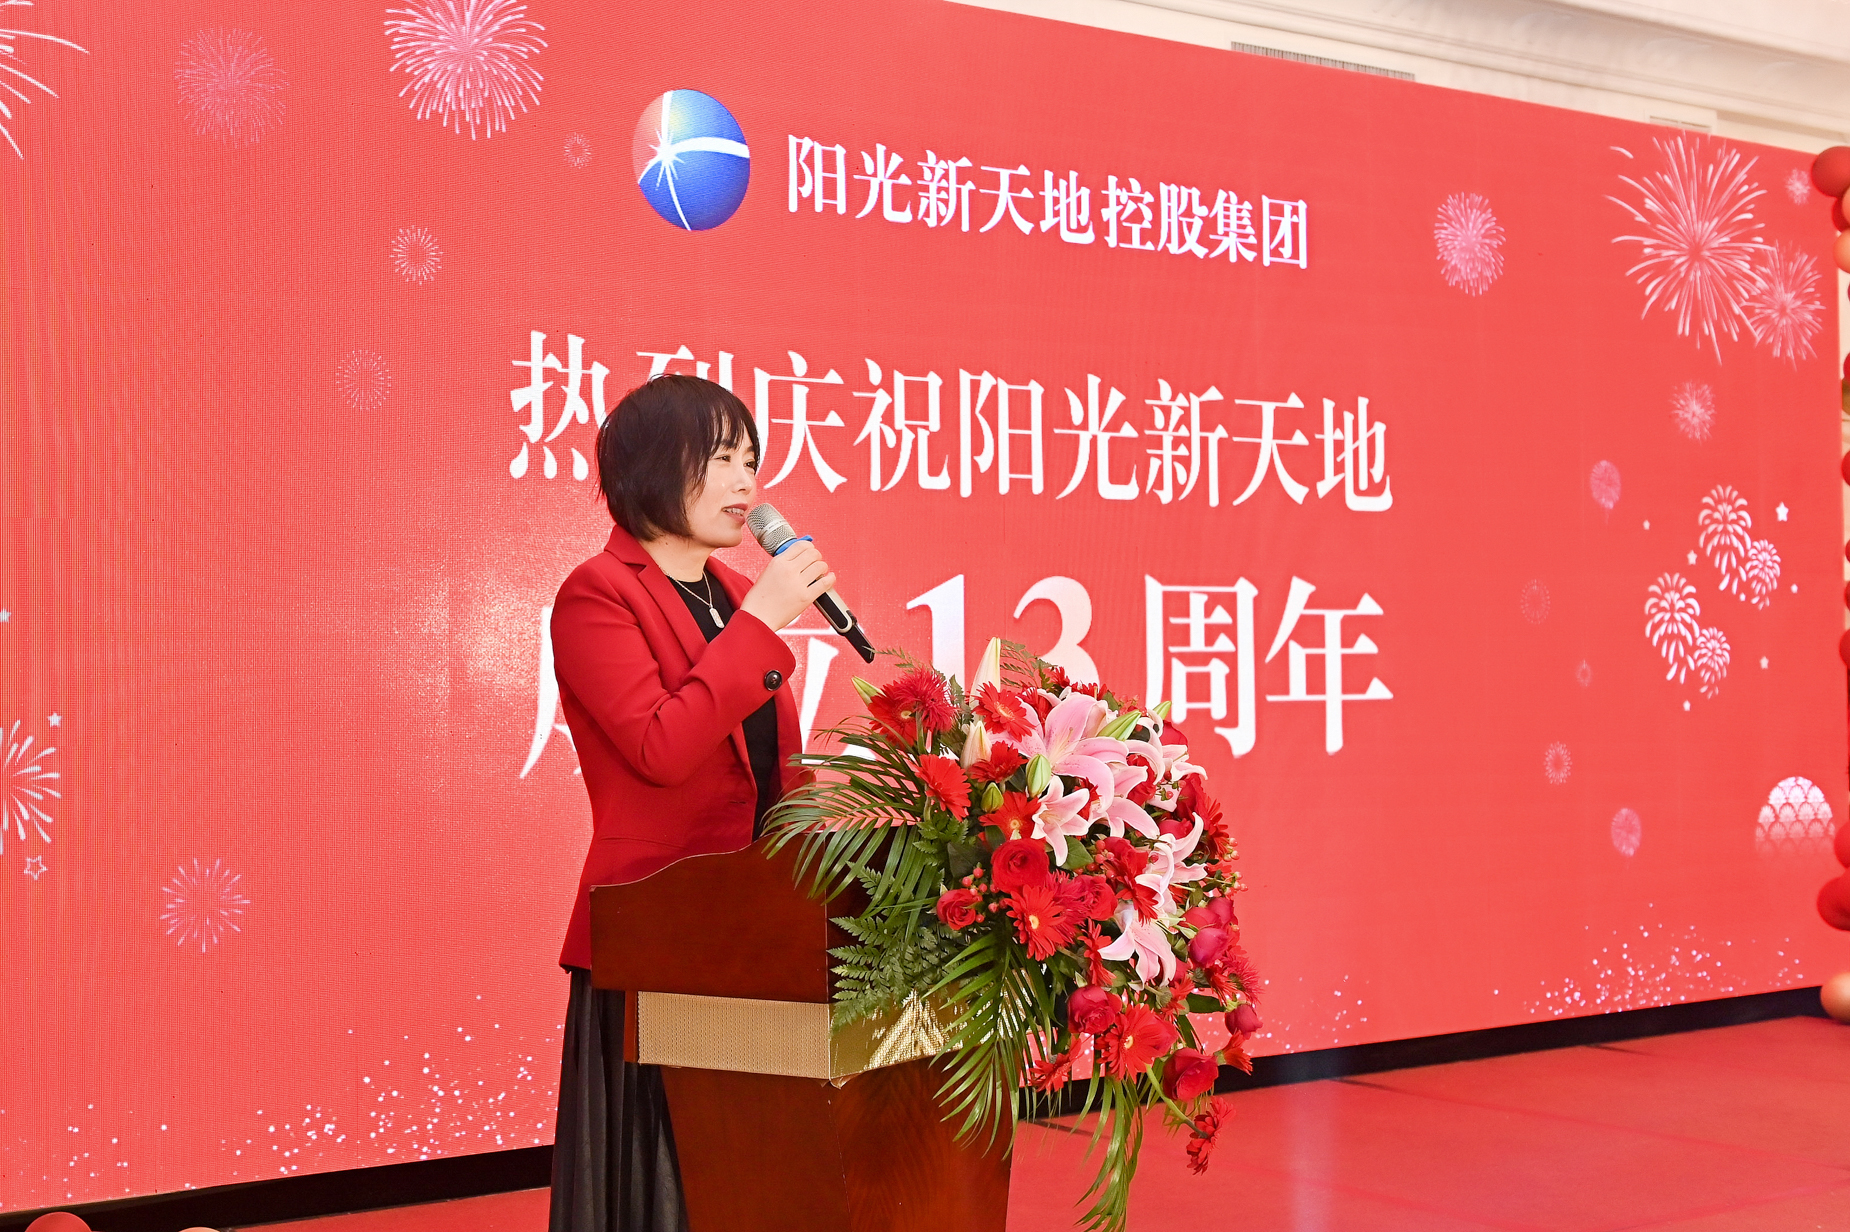 阳光新天地控股集团举办十三周年庆系列活动